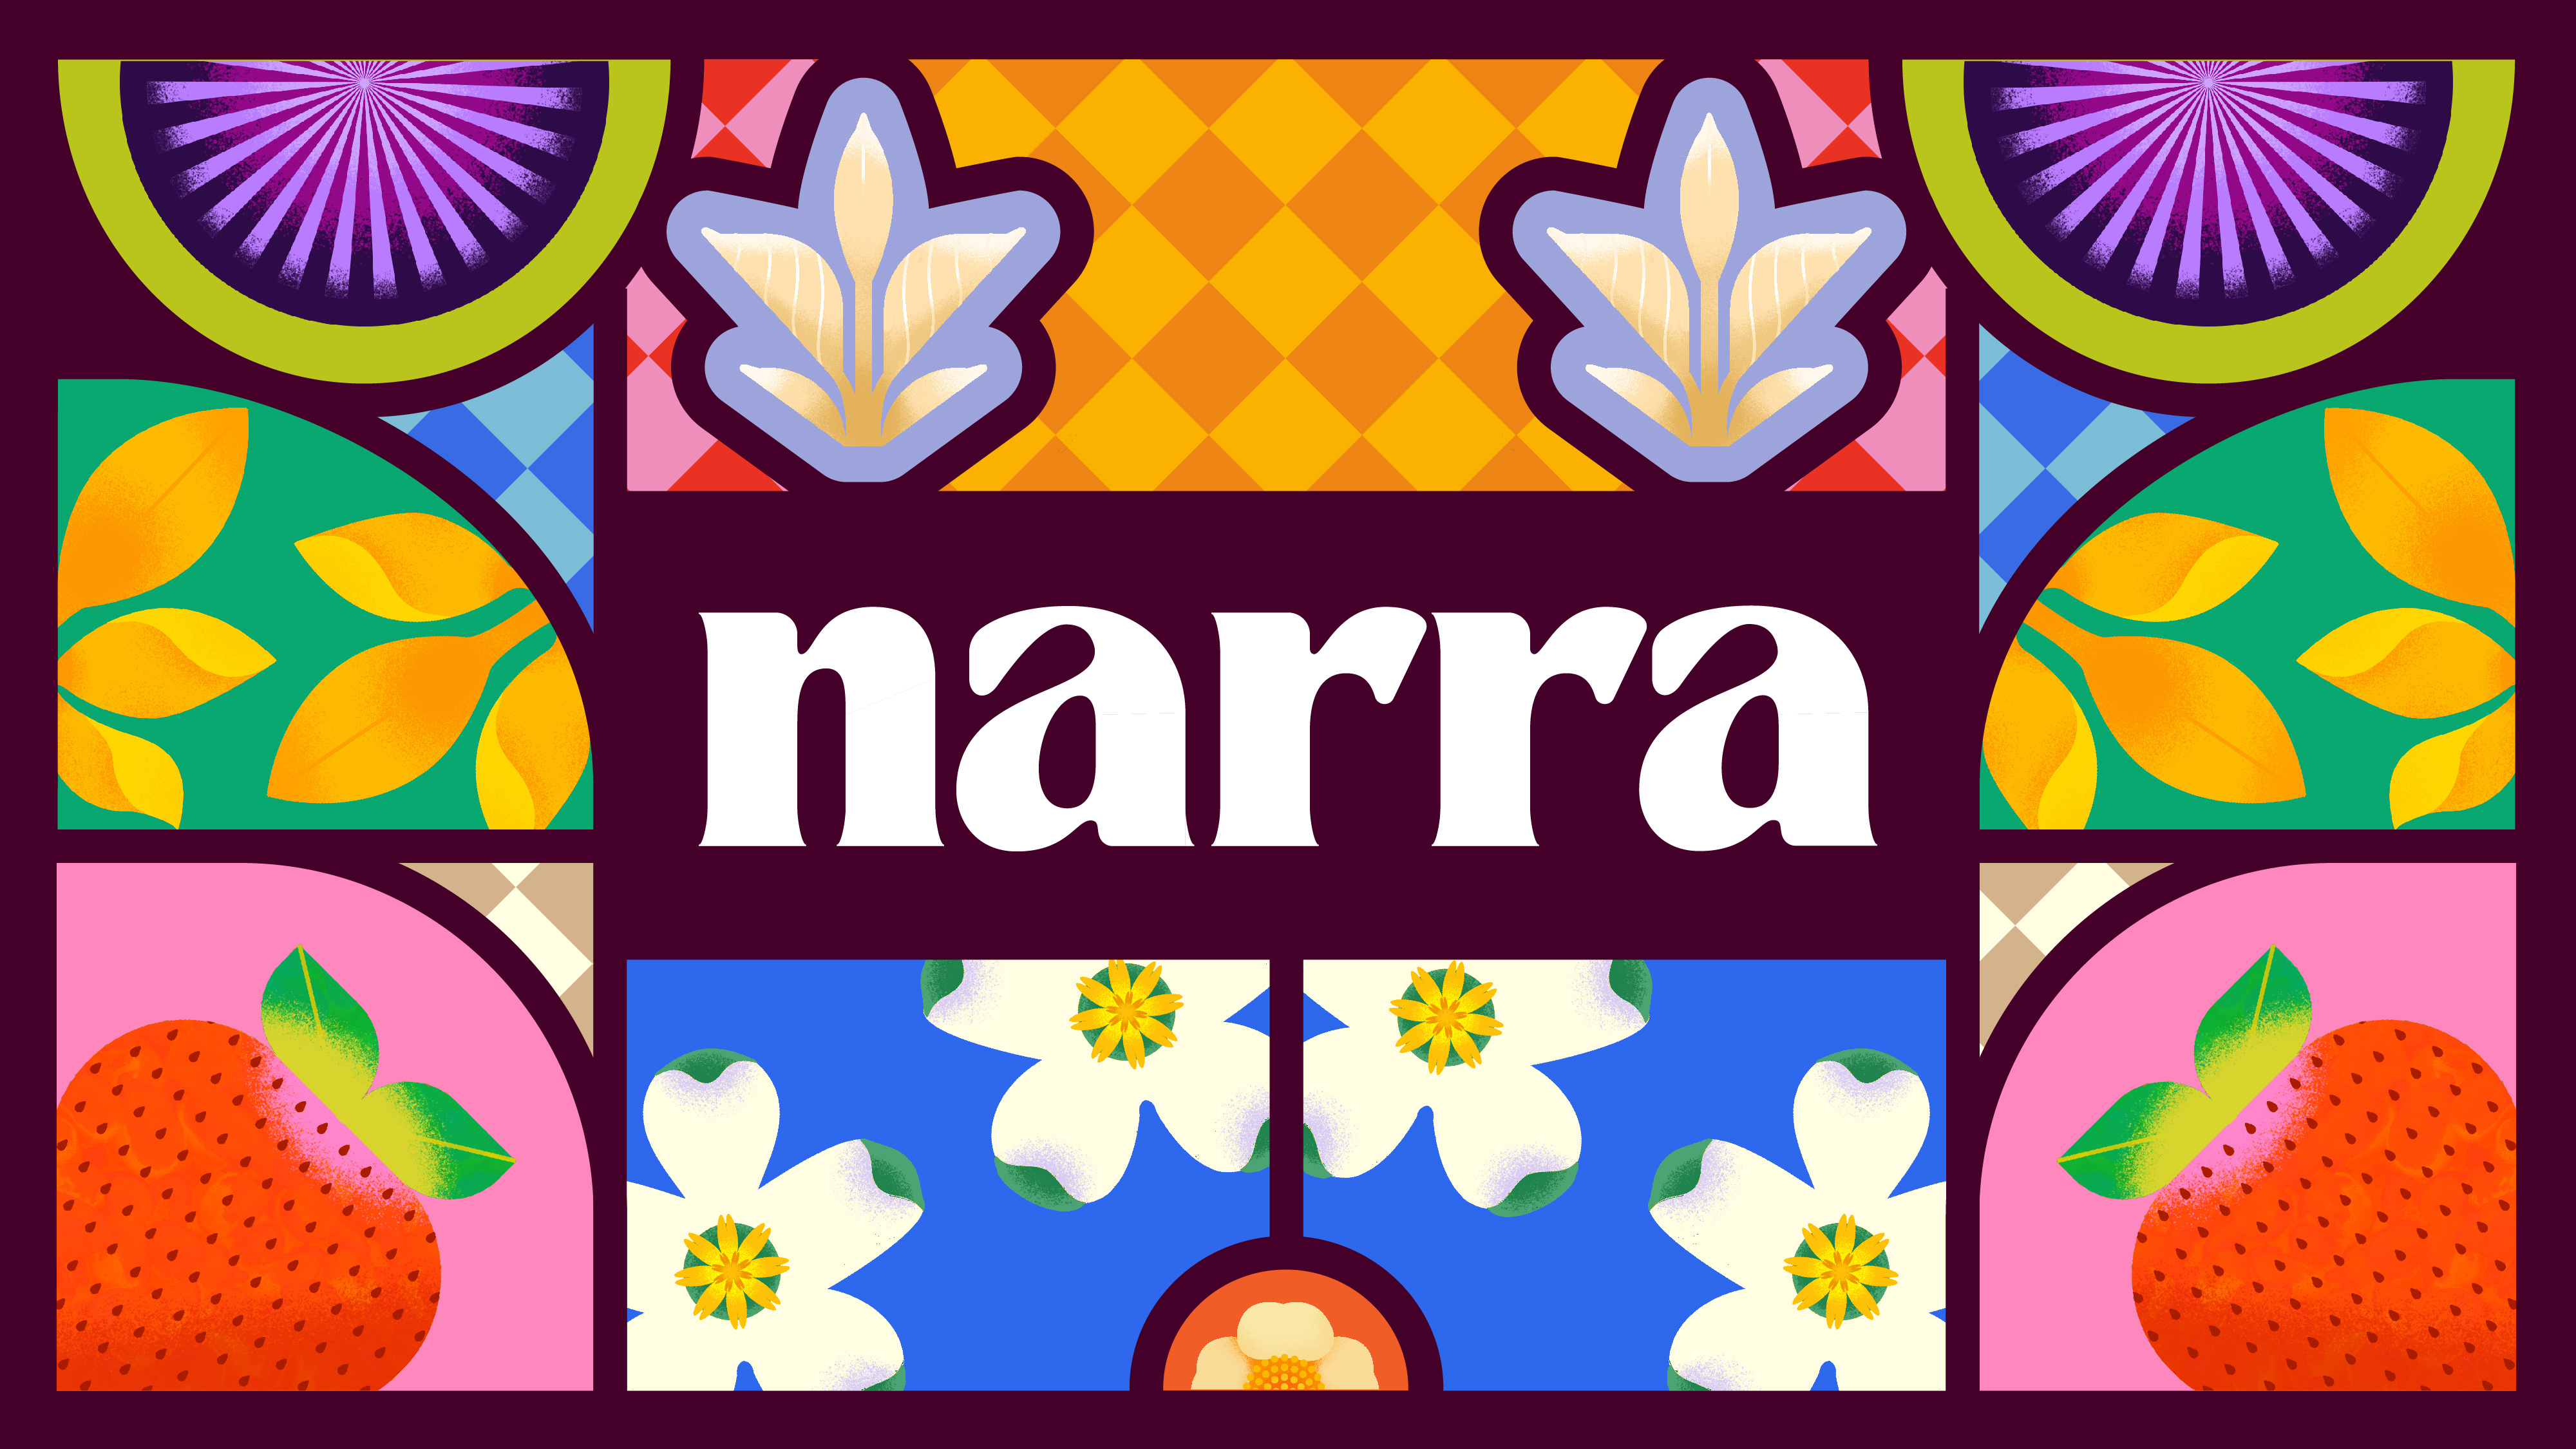 030505_NARRA_Applications-01.jpg